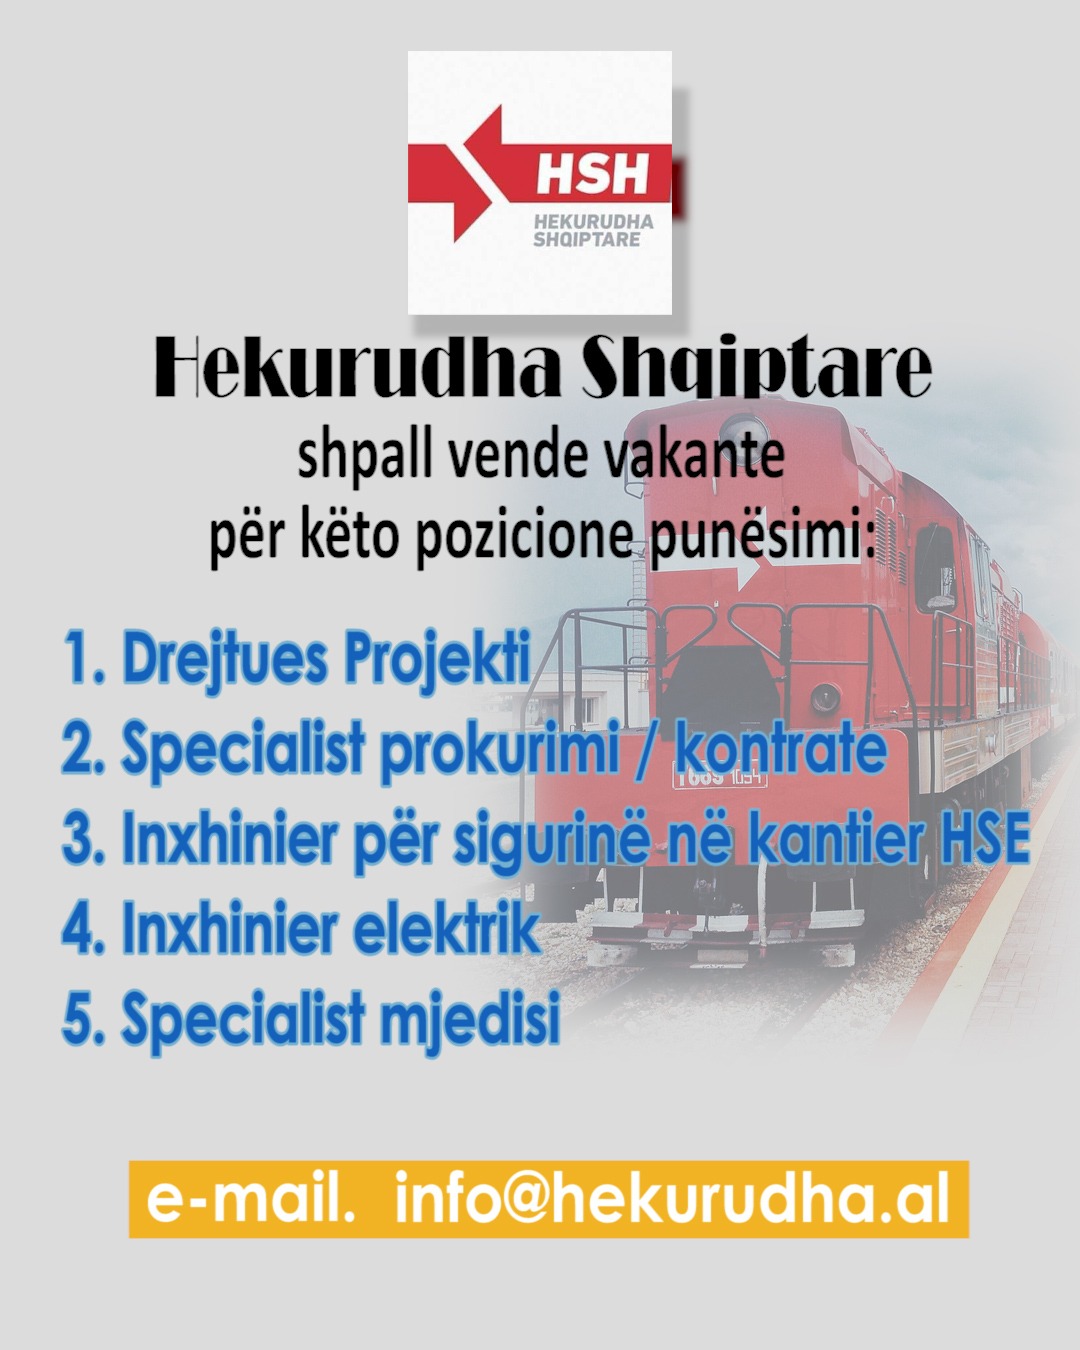 Hekurudha Shqiptare shpall vende vakante për 5 pozicione punësimi